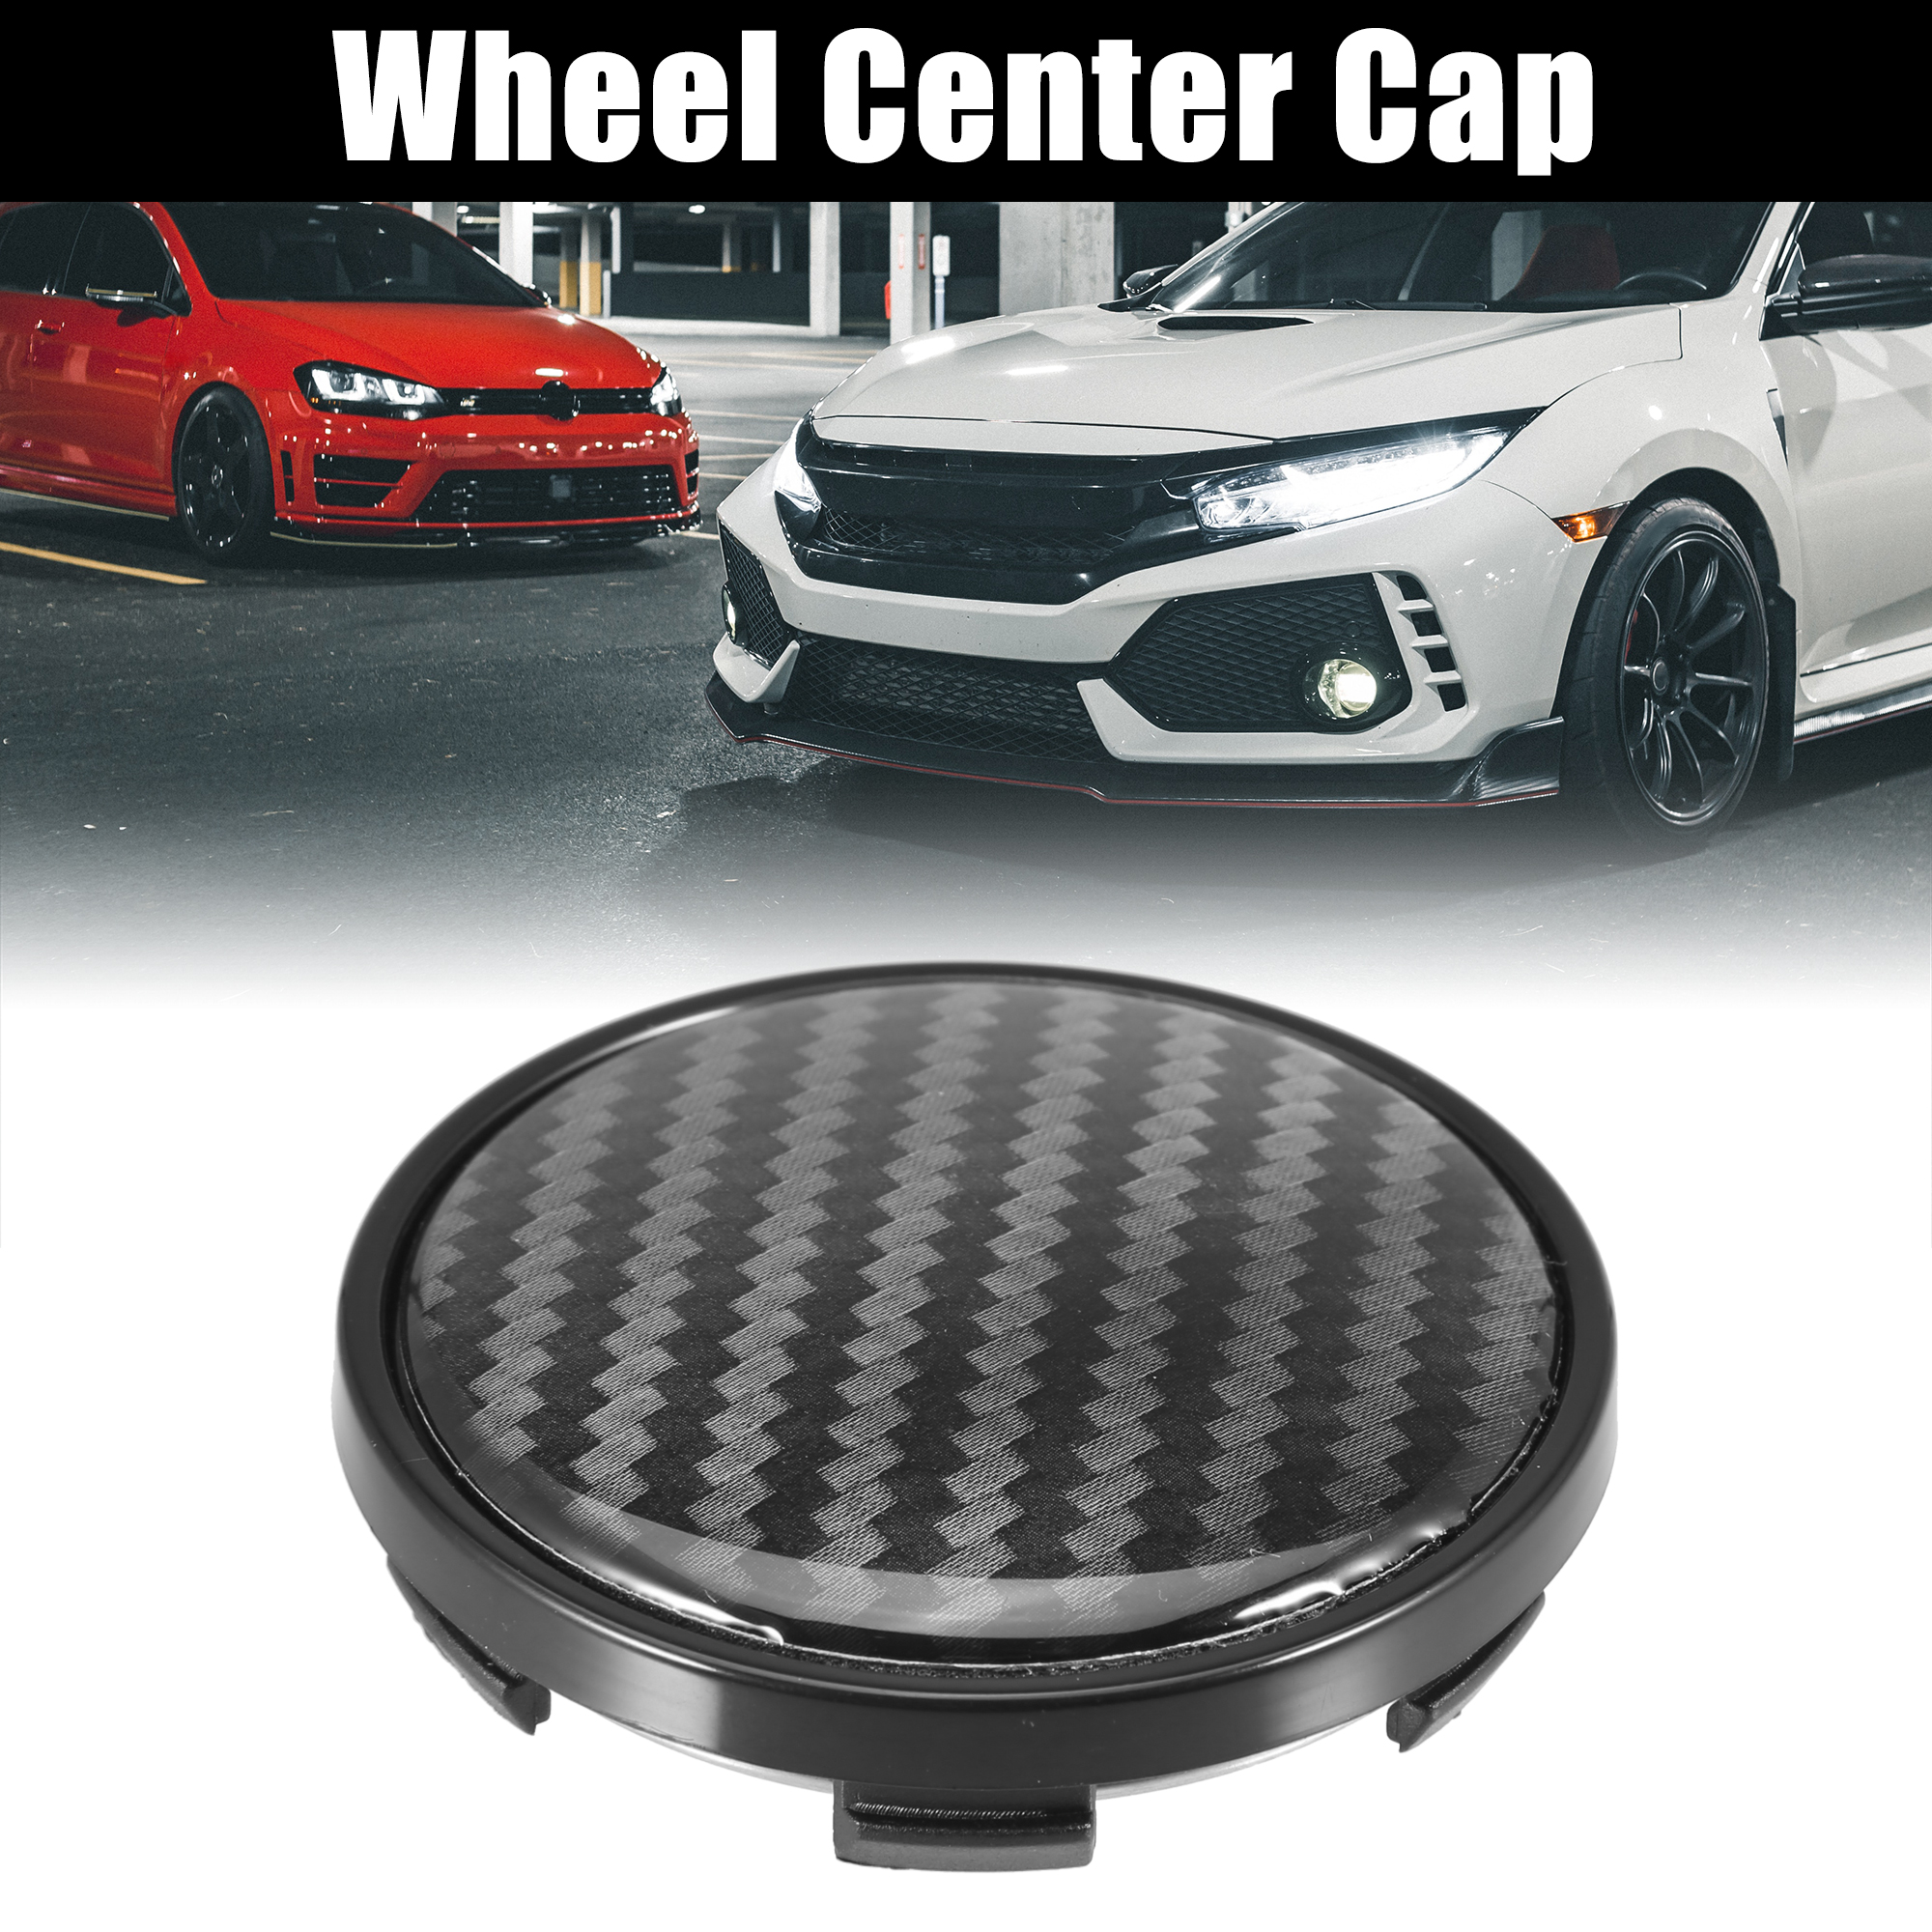 Unique Bargains 4pcs 58mm 62mm Wheel Center Hub Caps Hubcaps Covers Universal for Car Black